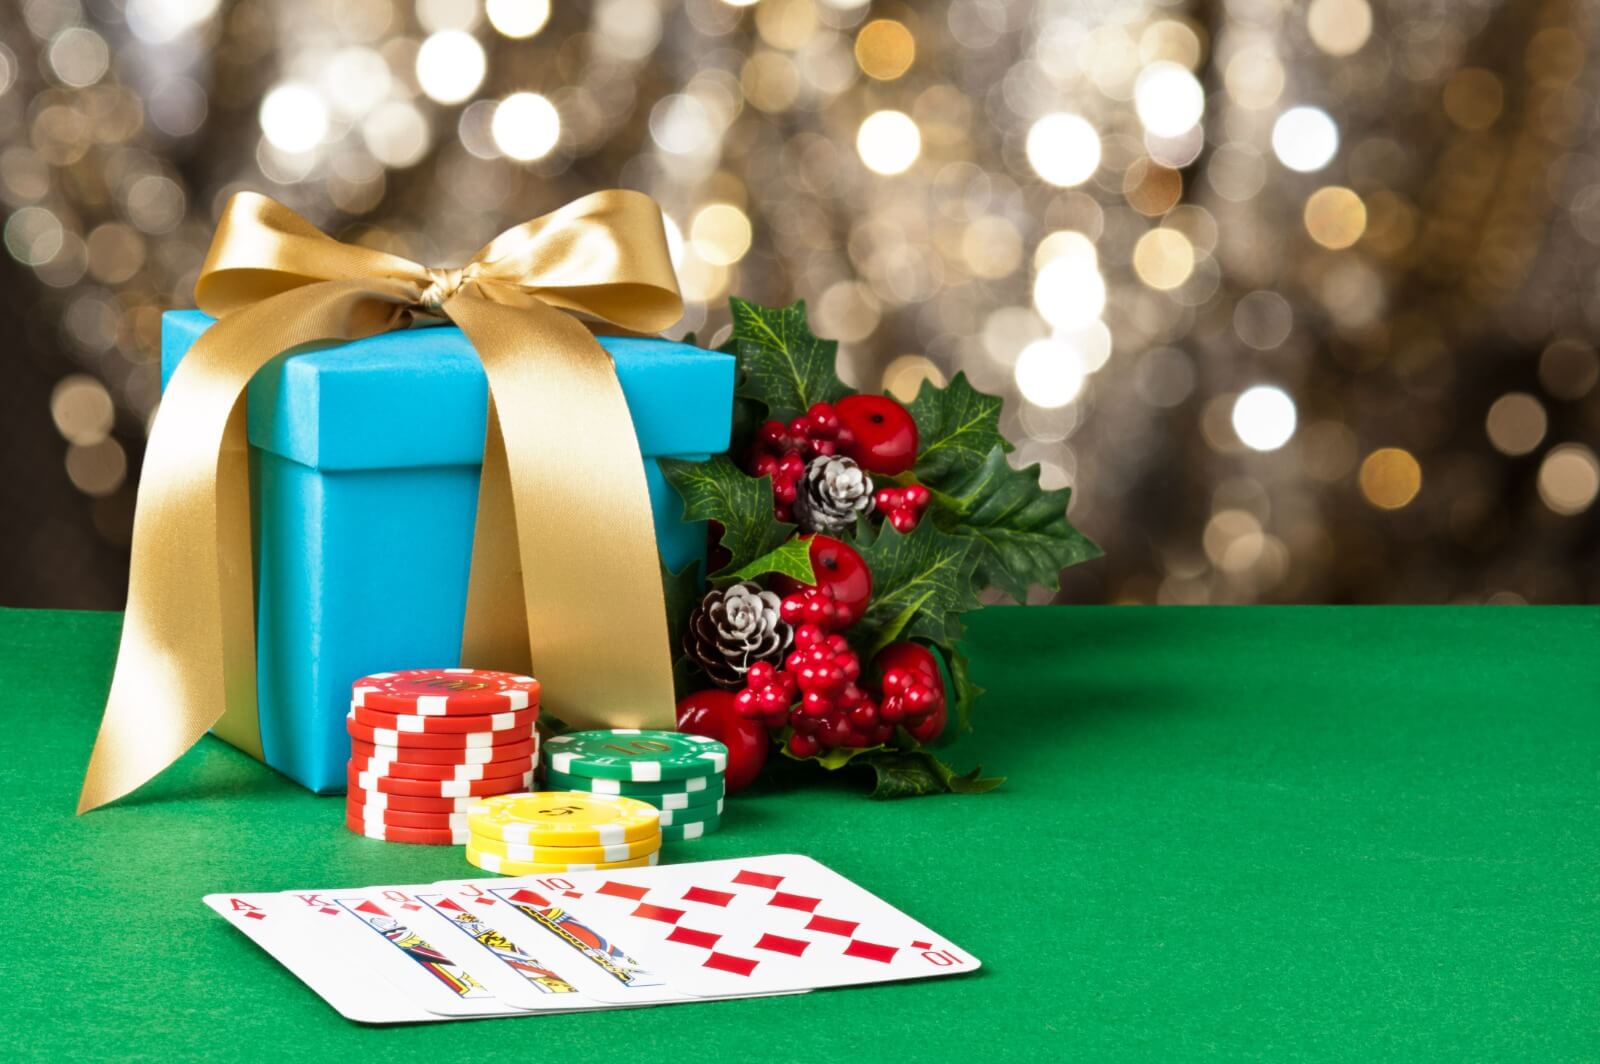 I libri sul poker da regalare a Natale